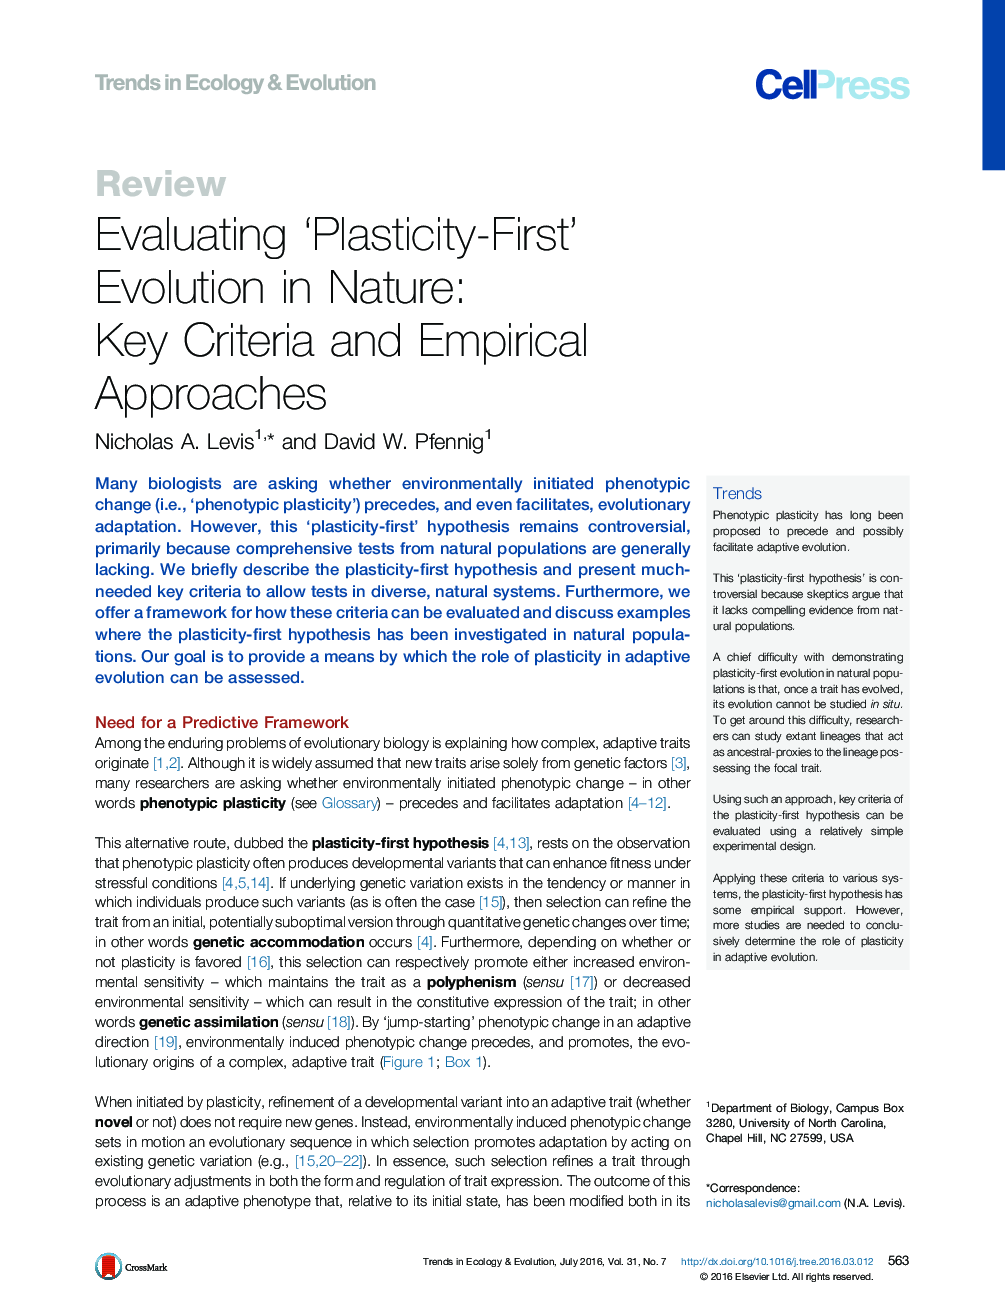 ارزیابی تکامل پلاستیسیته اول در طبیعت: معیارهای کلیدی و روش تجربی